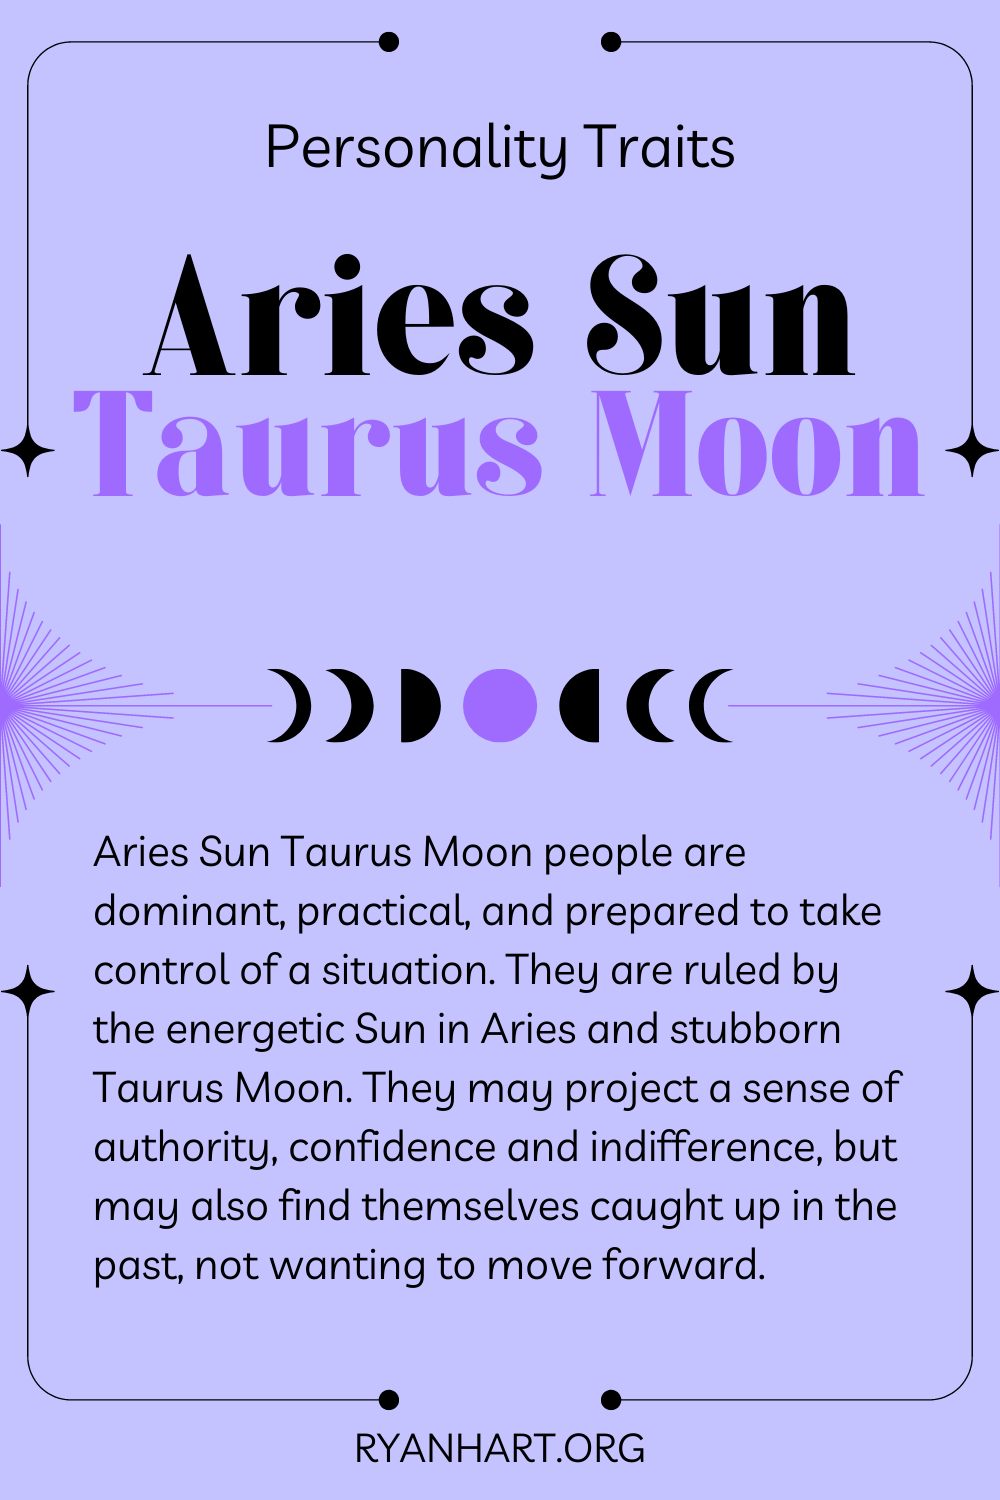 Aries Sun Taurus Moon Description